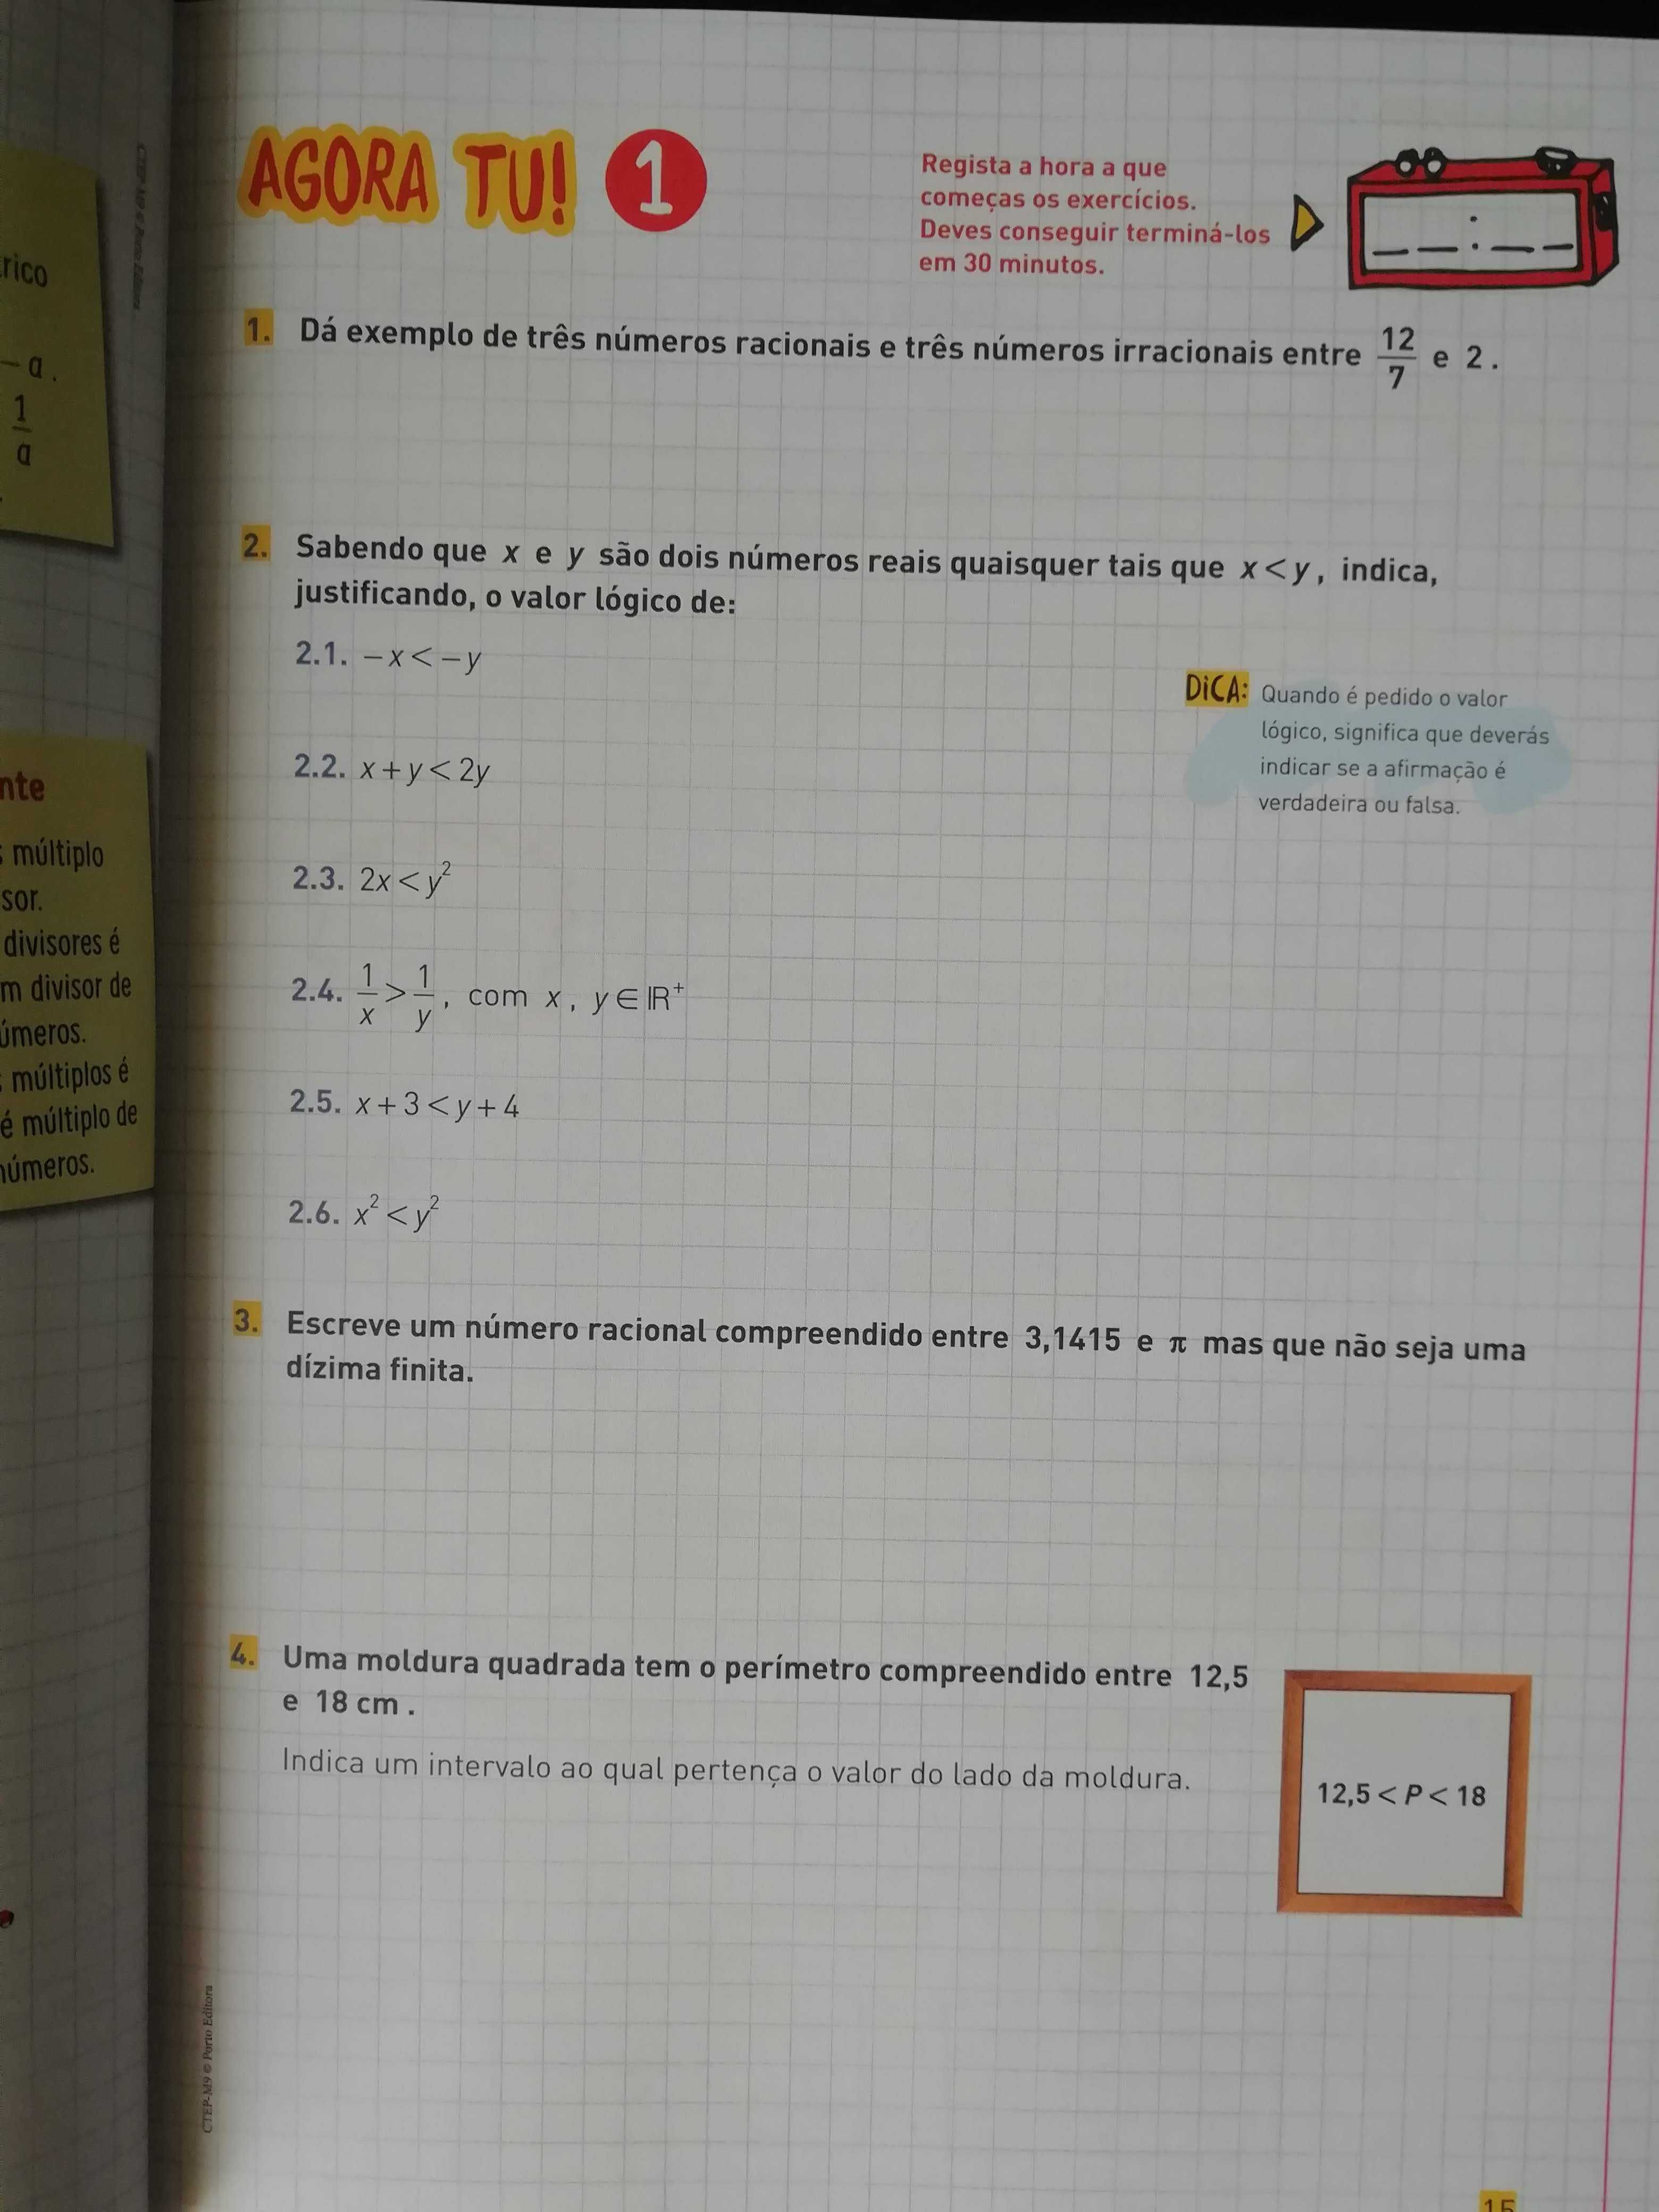 livro Matemática 9º ano preparação testes Porto Editora